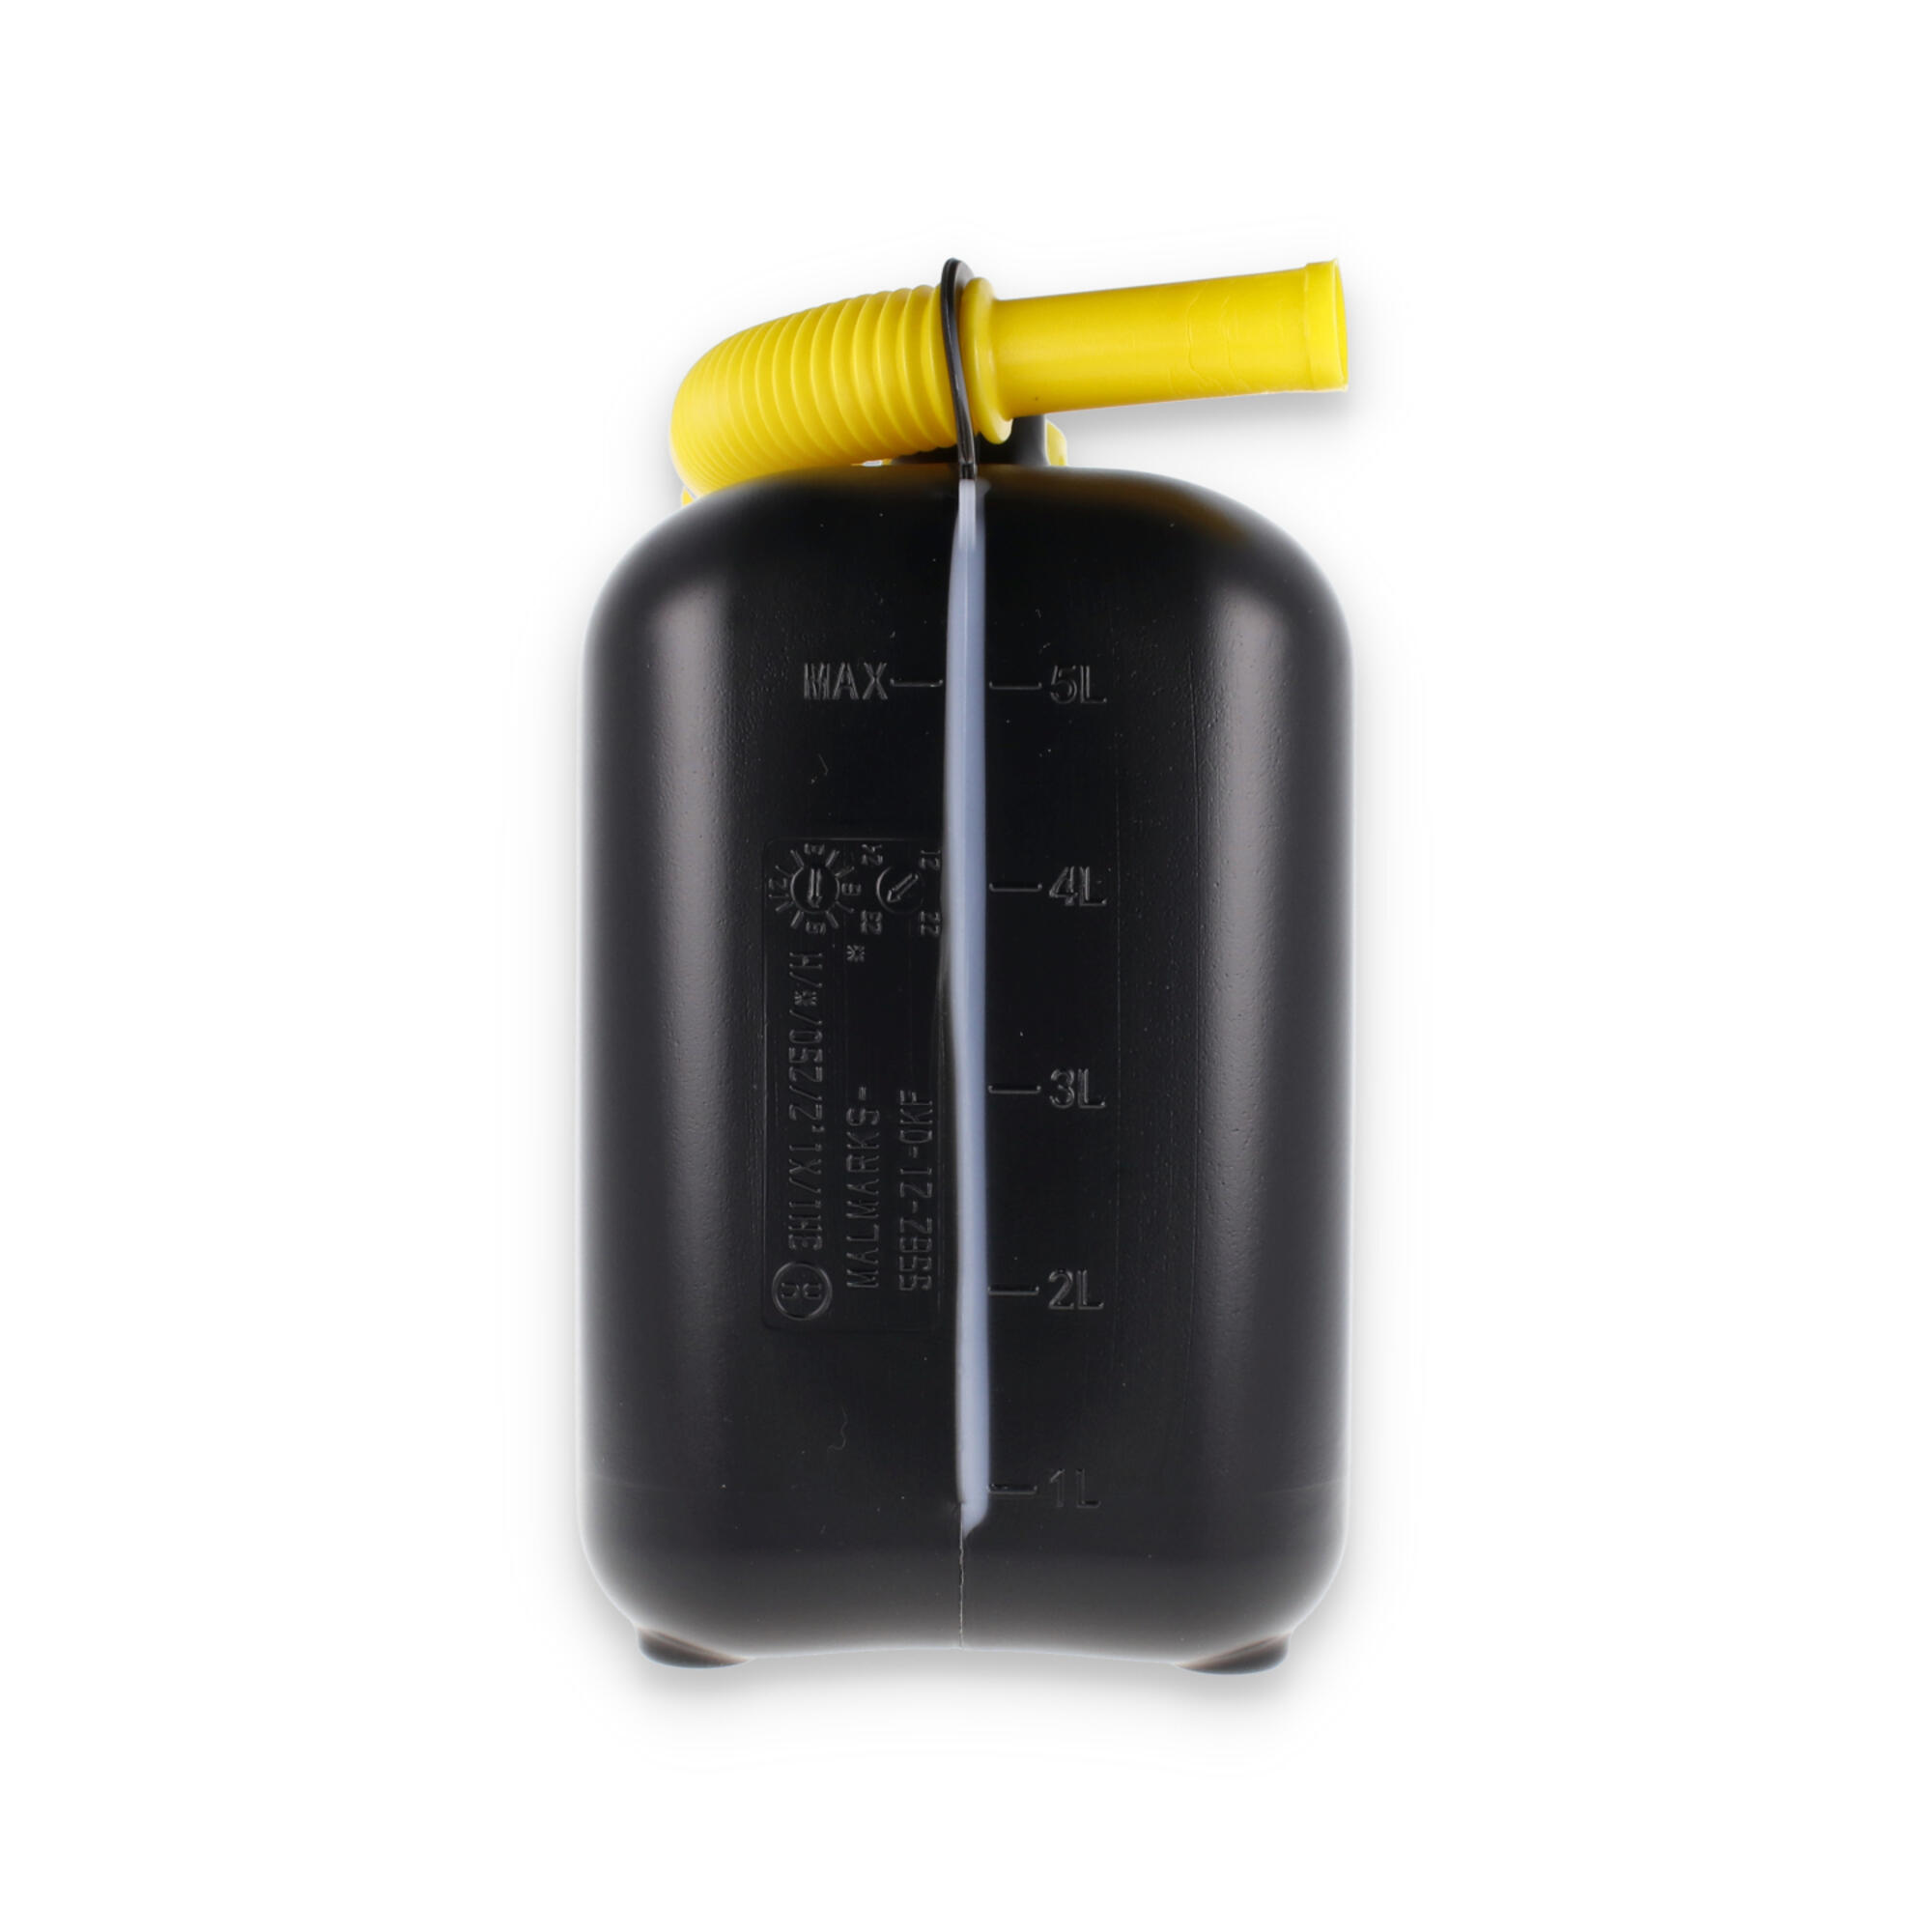 Bidón para gasolina garland de plástico 5 litros de capacidad